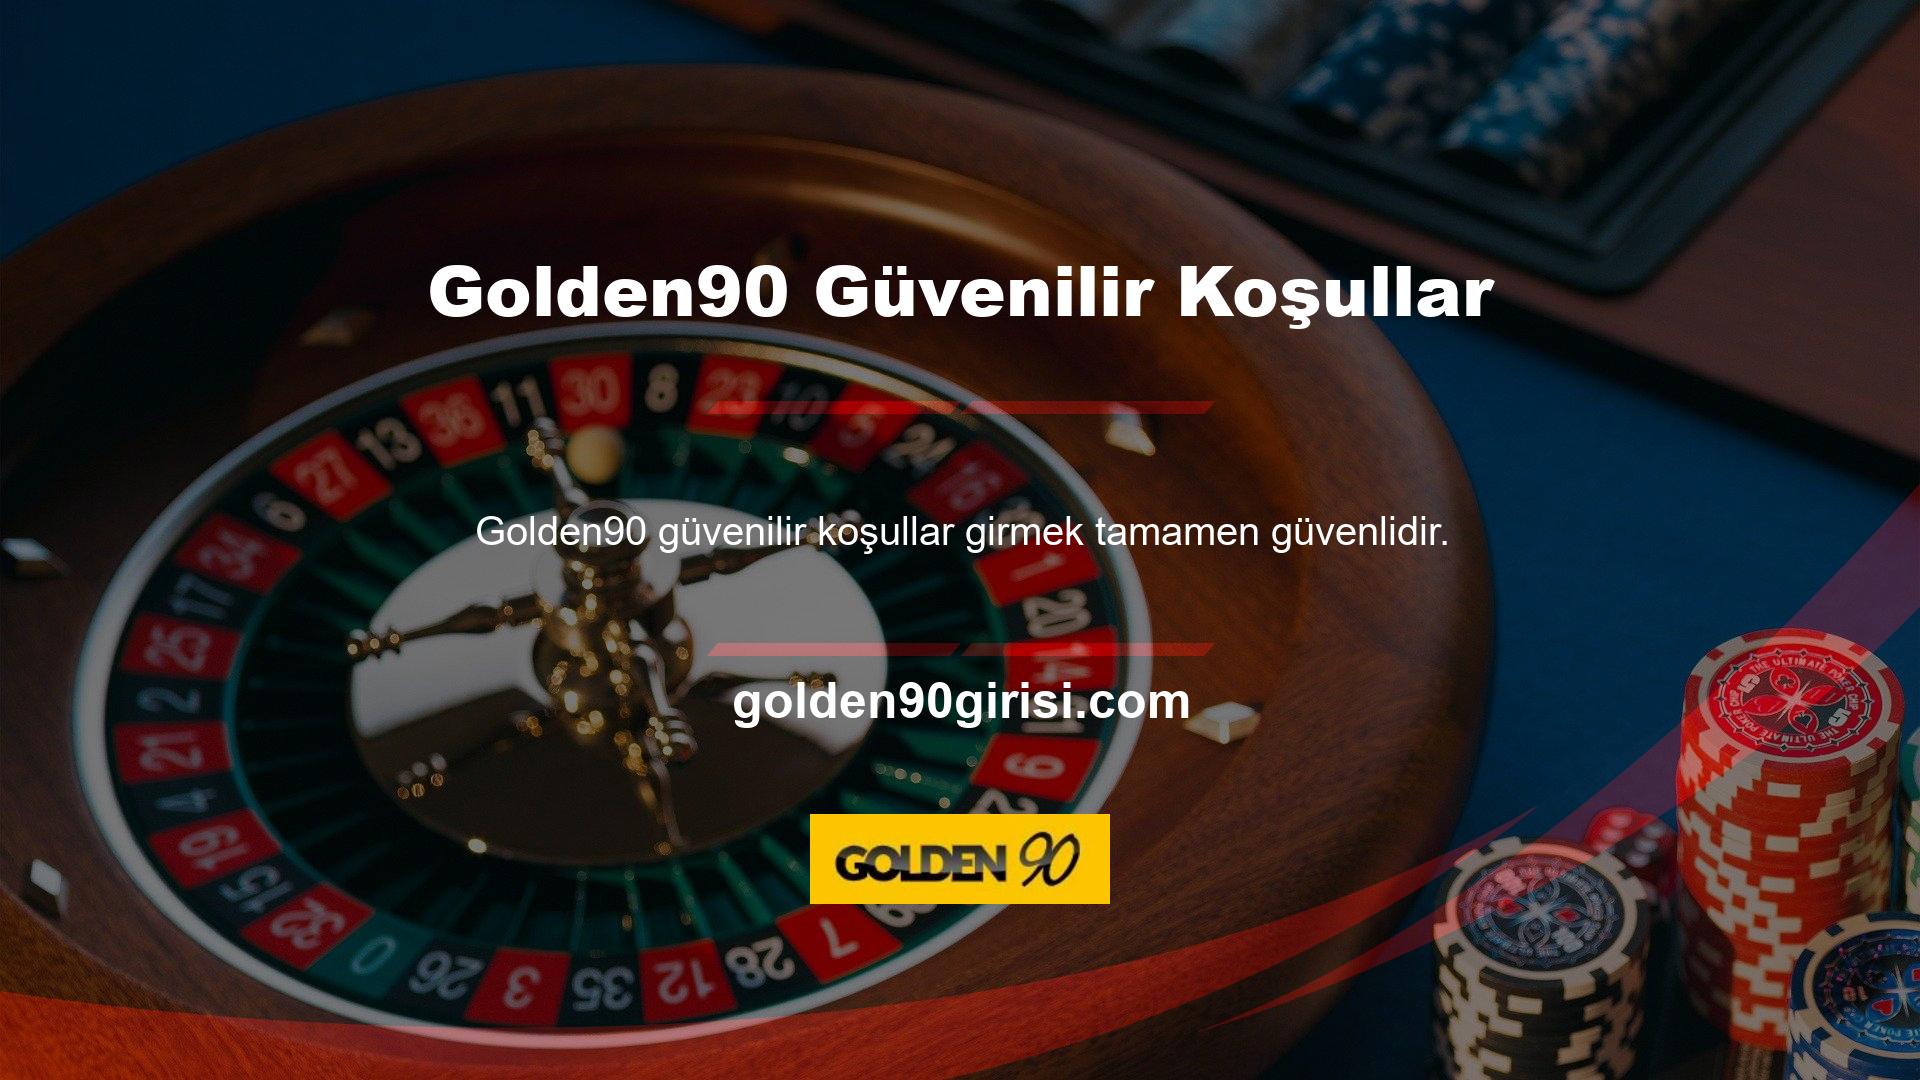 Golden90, hükümetten gerekli onayı almış meşru ve güvenilir bir web sitesidir